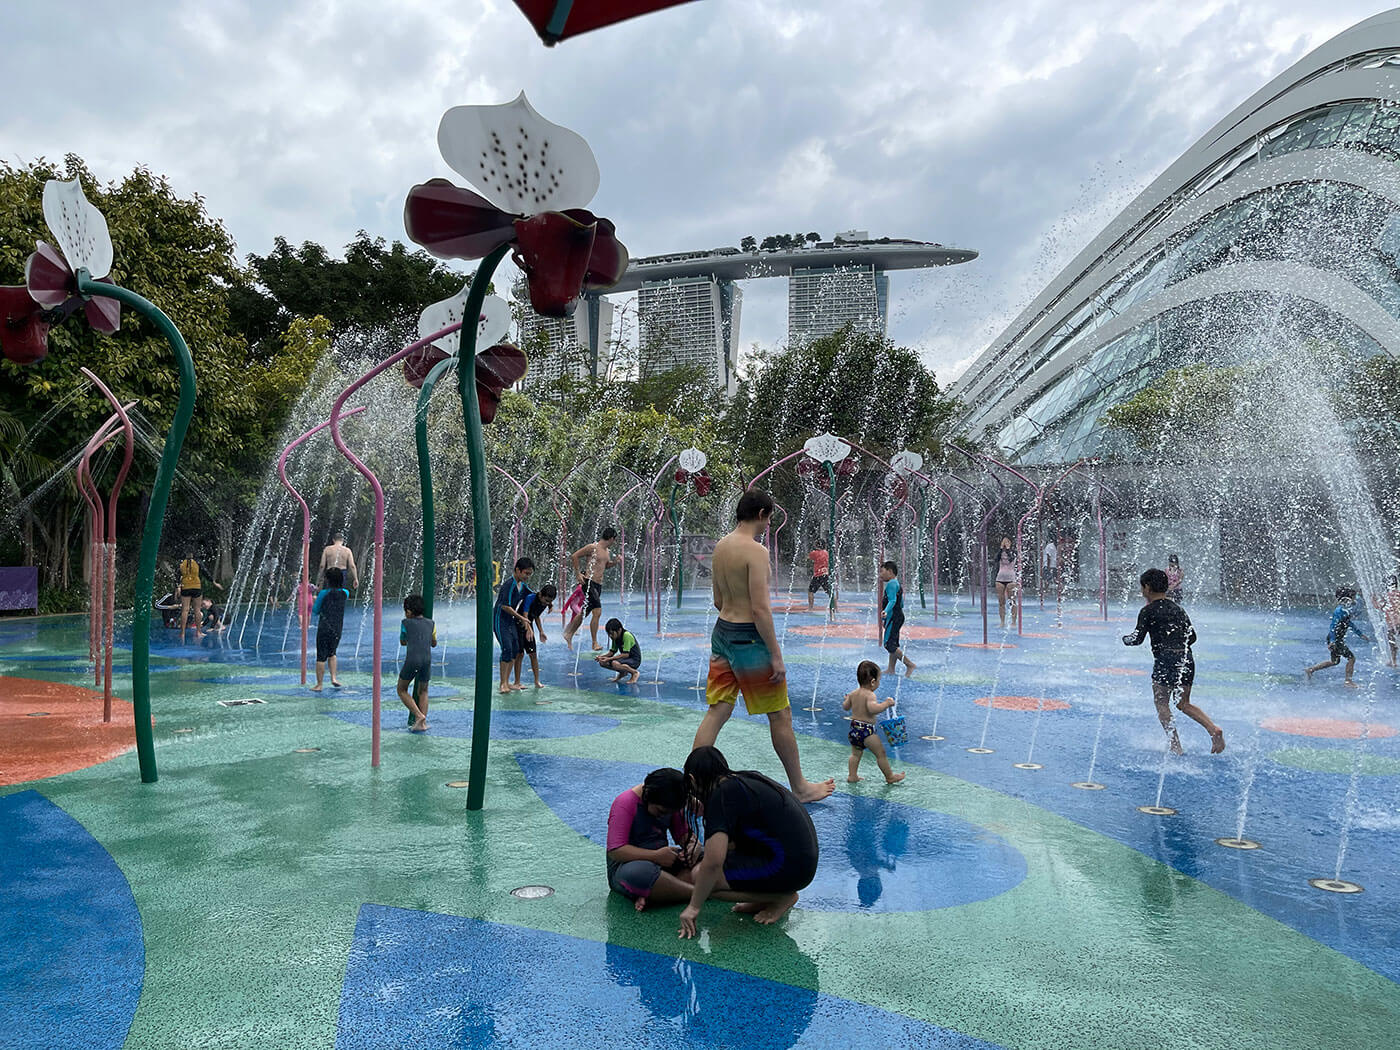 Singapore Children's Garden